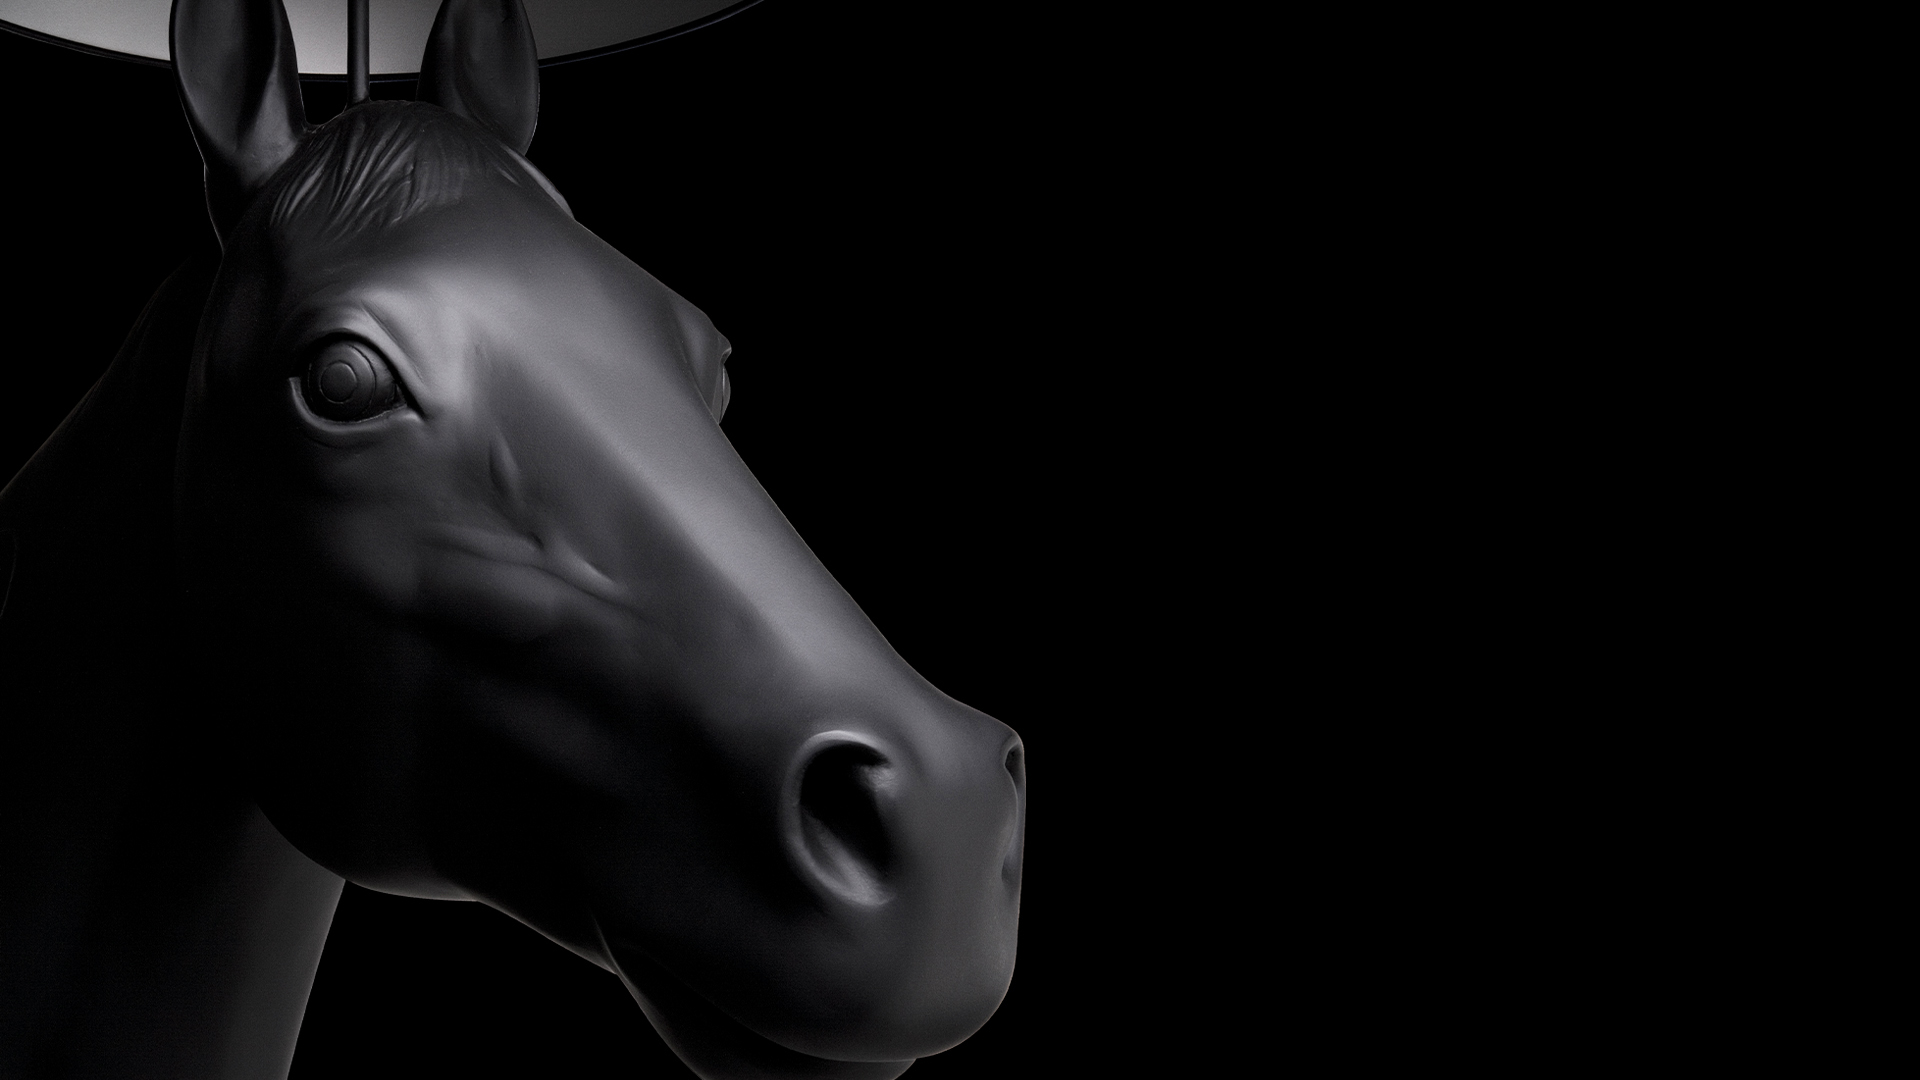 Horse Lamp Detail on Black